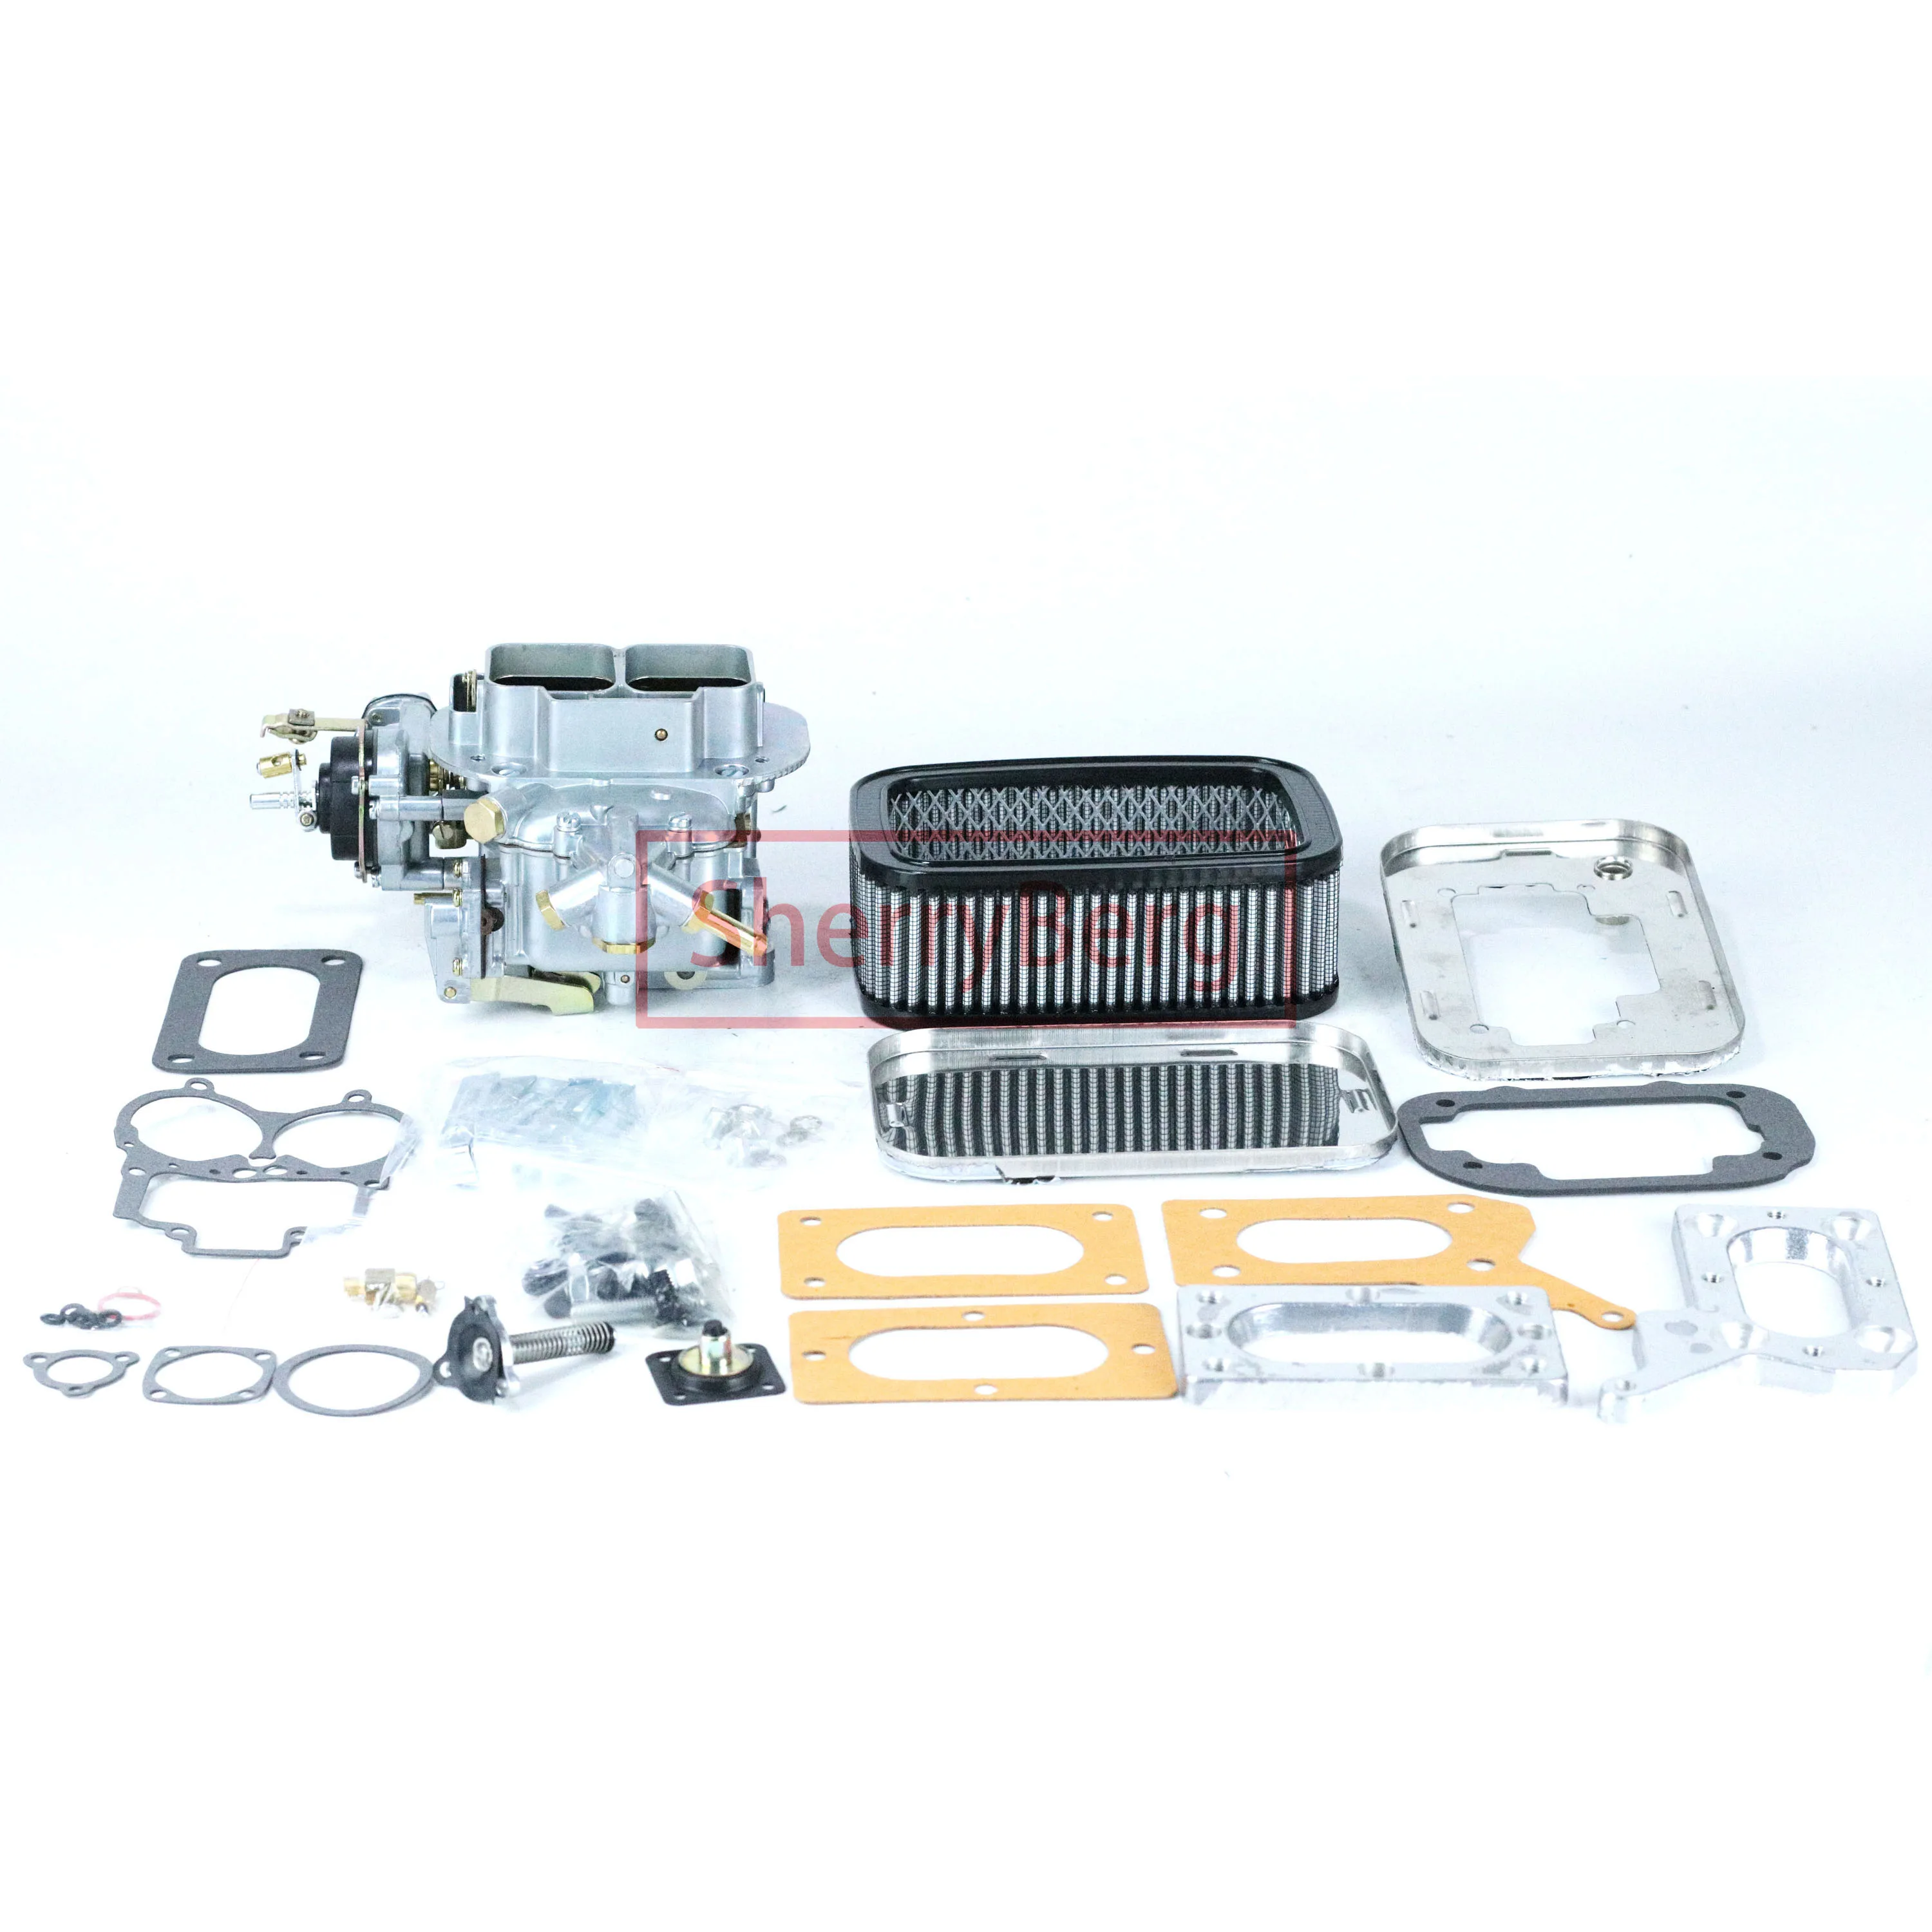 

SherryBerg 32/36 DGV EMPI Carburetor 99004130 CARB + Adapter + Air Filter FOR MAZDA MITSUBISHI DODGE CHRYSLER 2.0 2.6 WEBER New